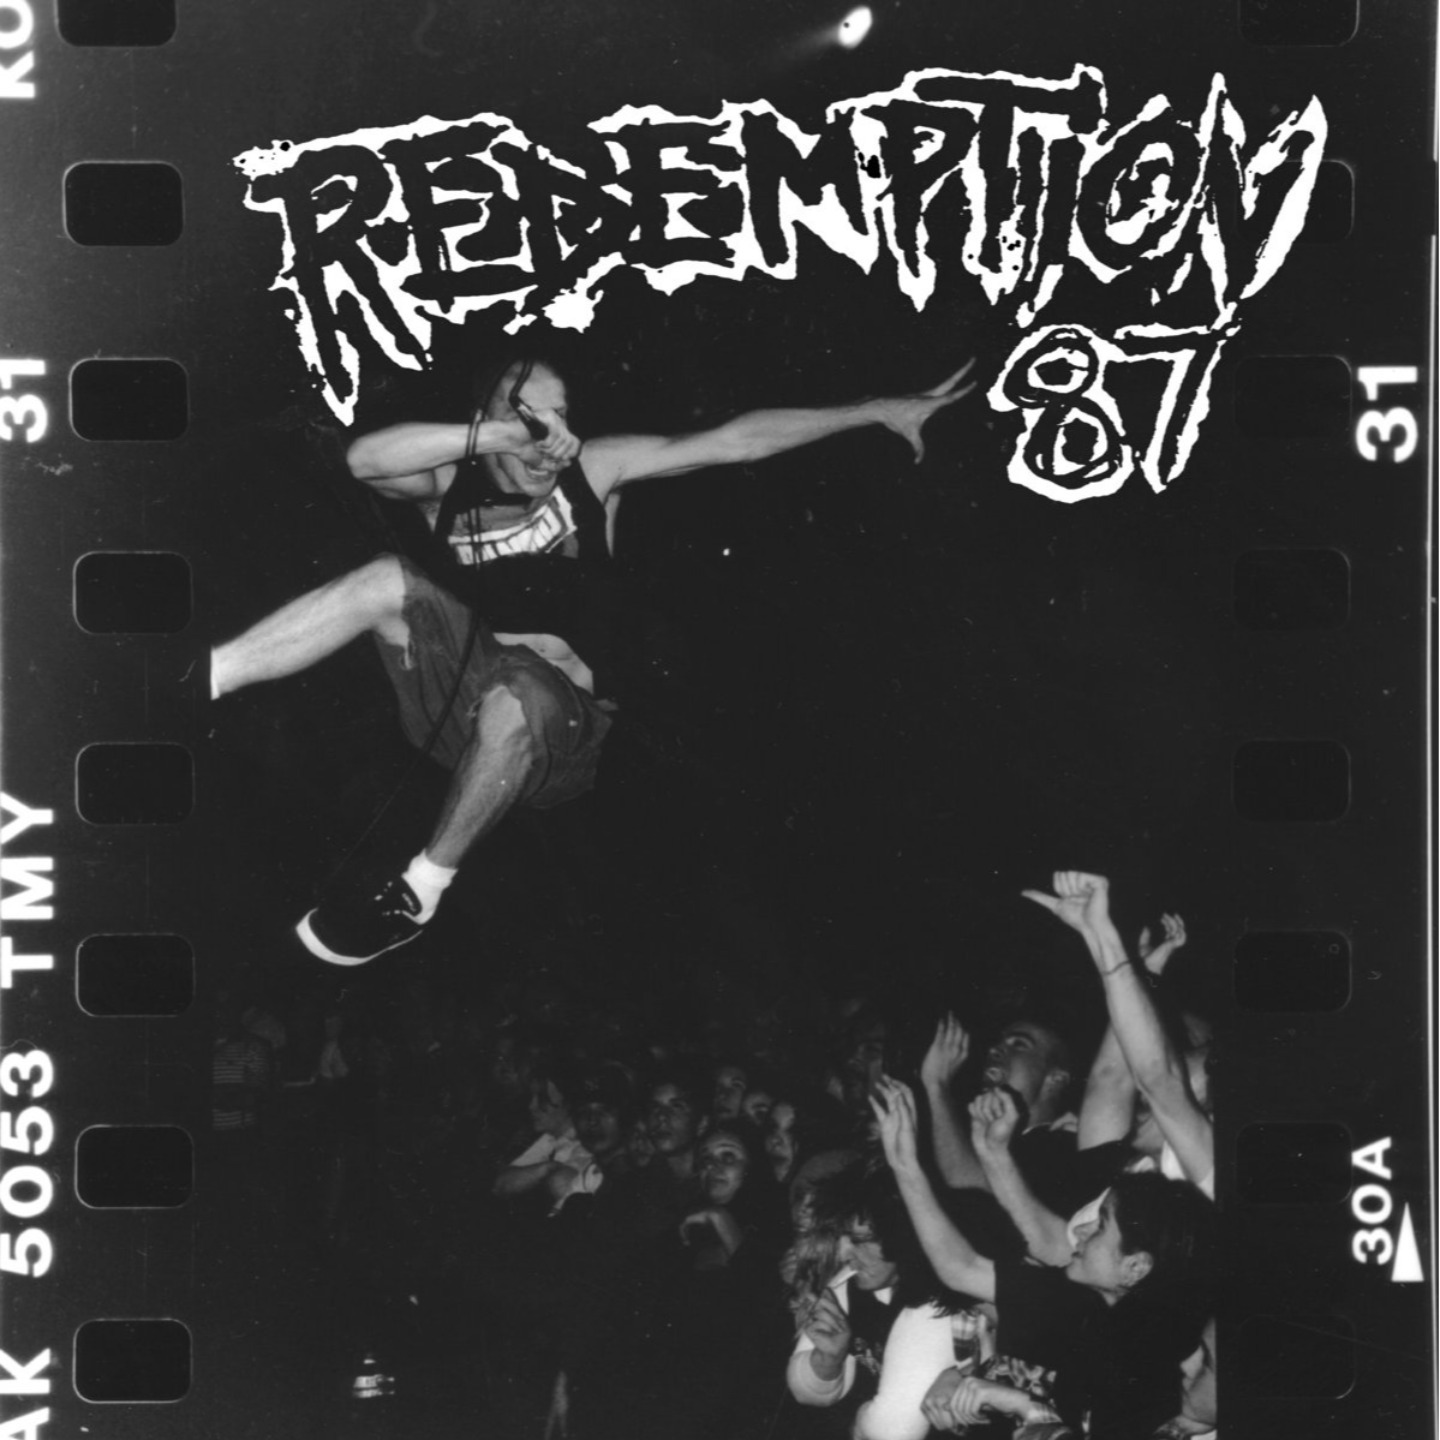 REDEMPTION 87 - Redemption 87 Pink Marble Vinyl